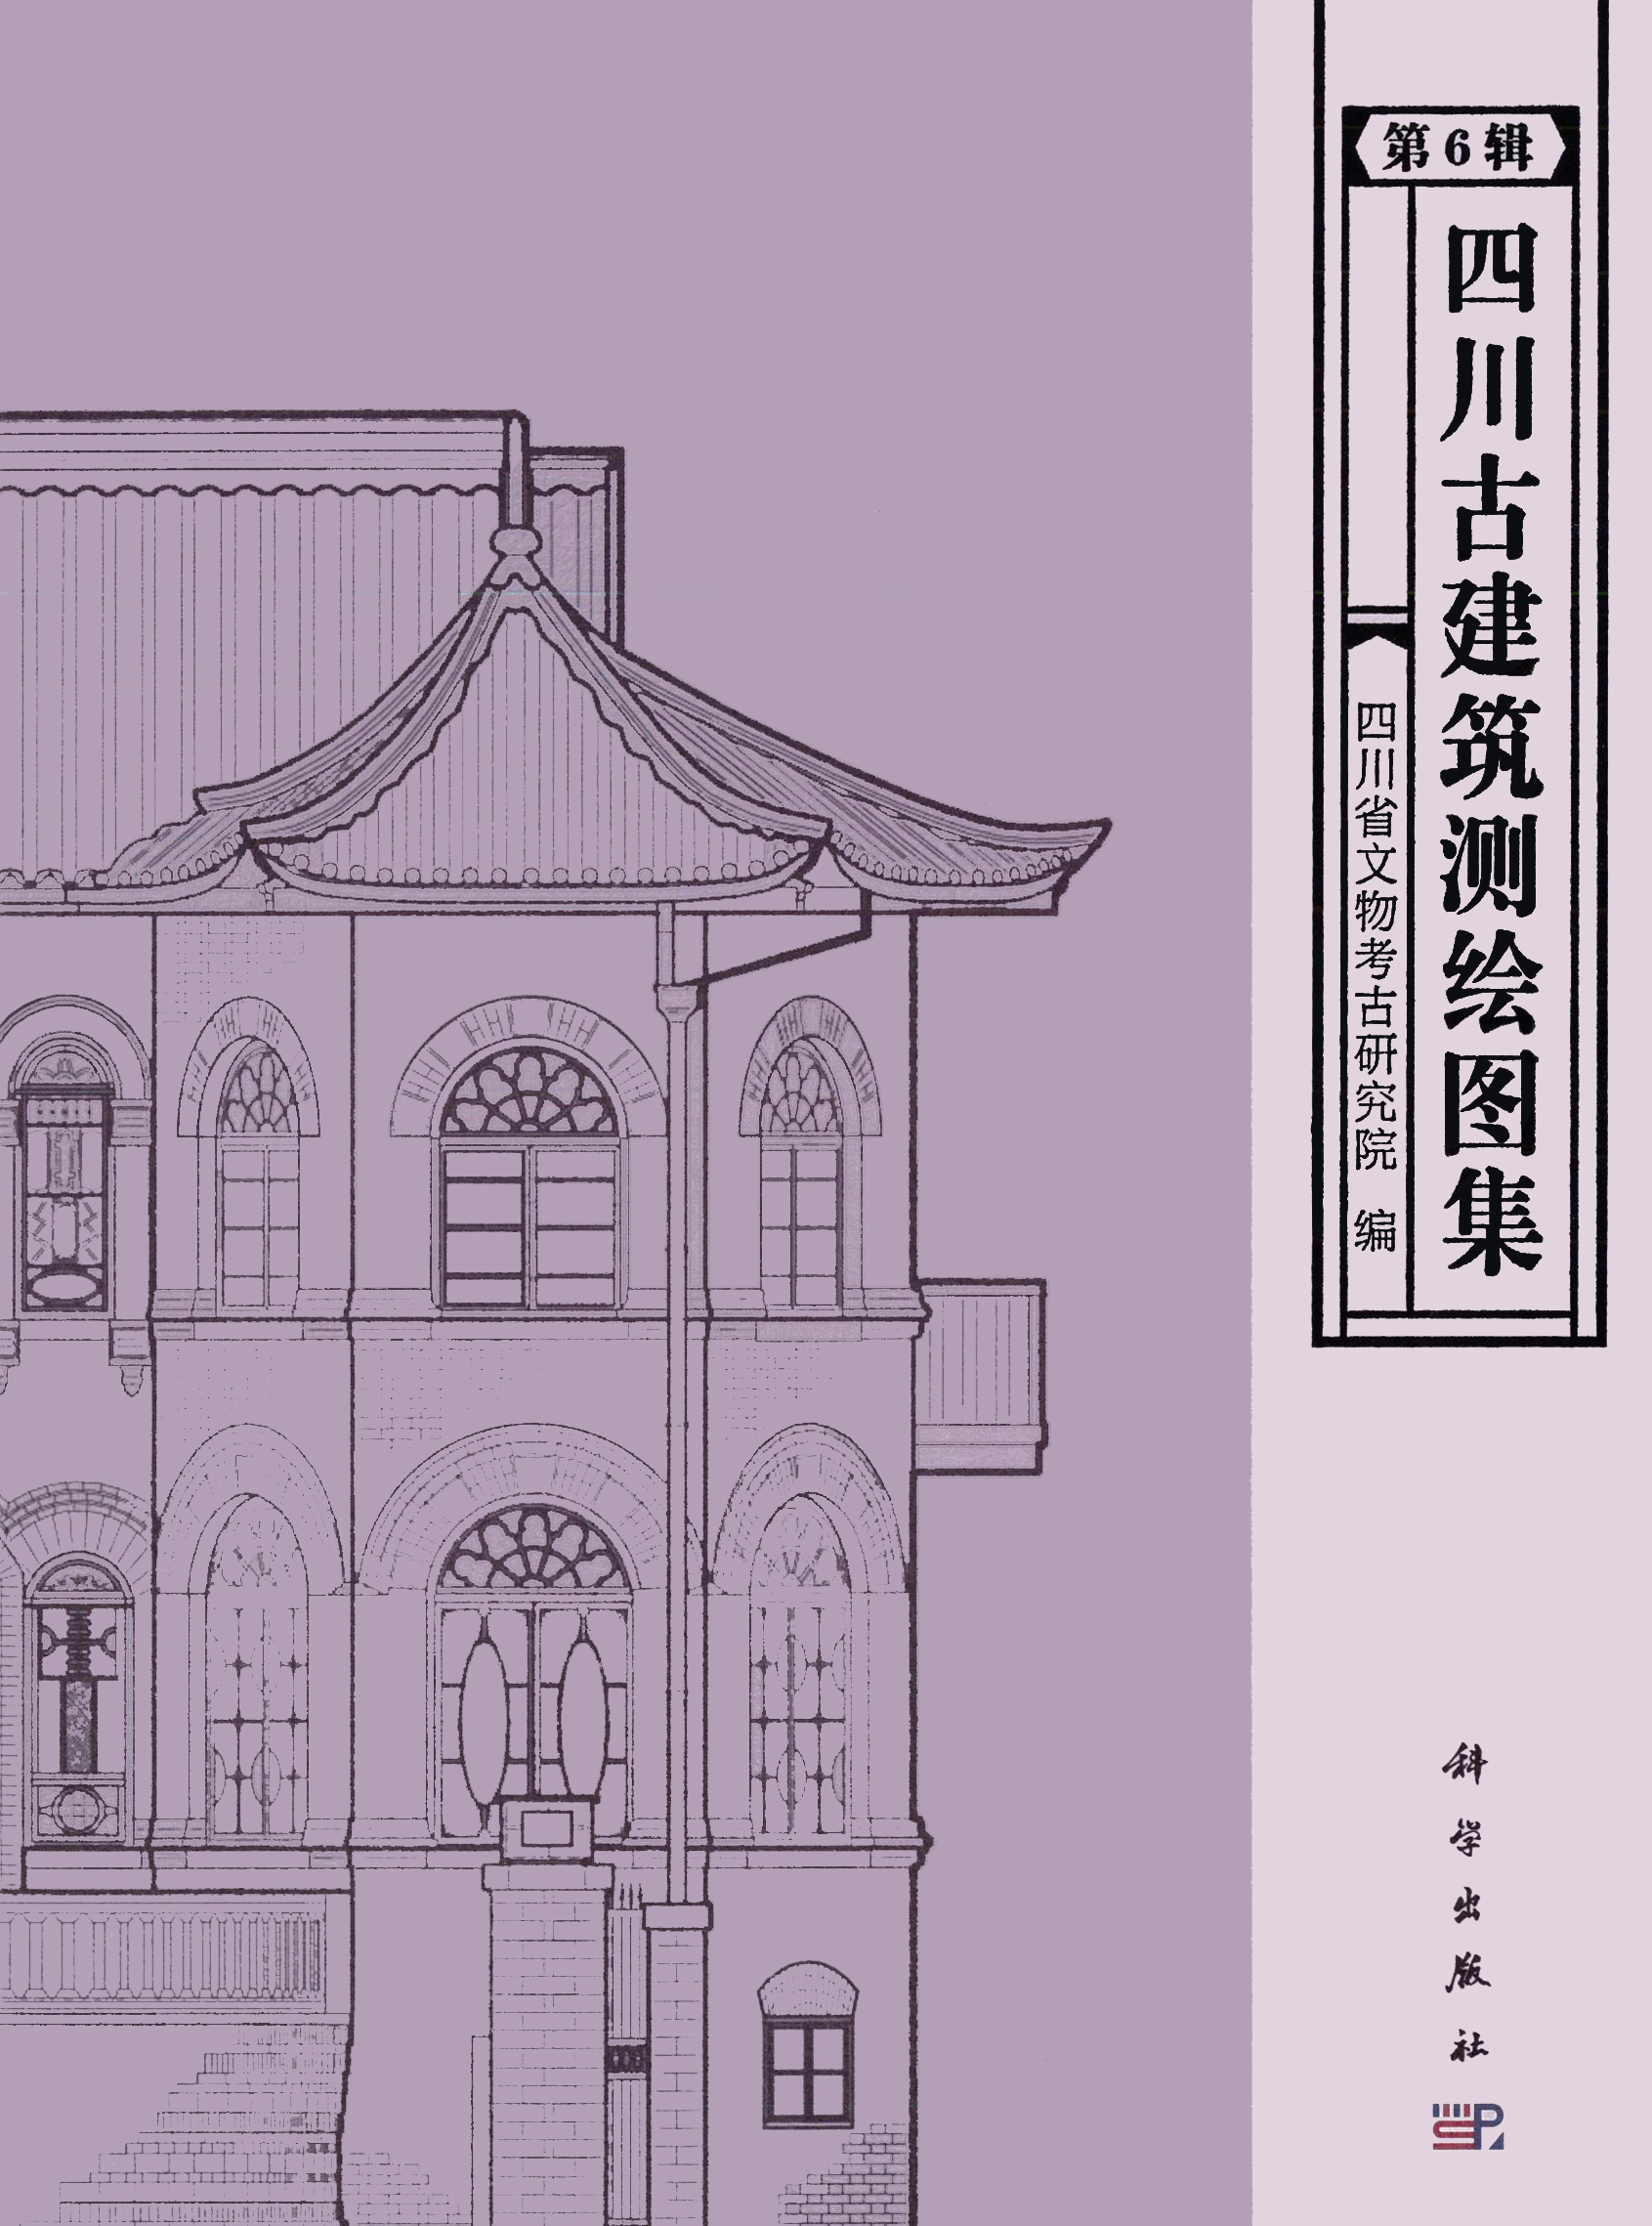 四川古建筑测绘图集 第六辑